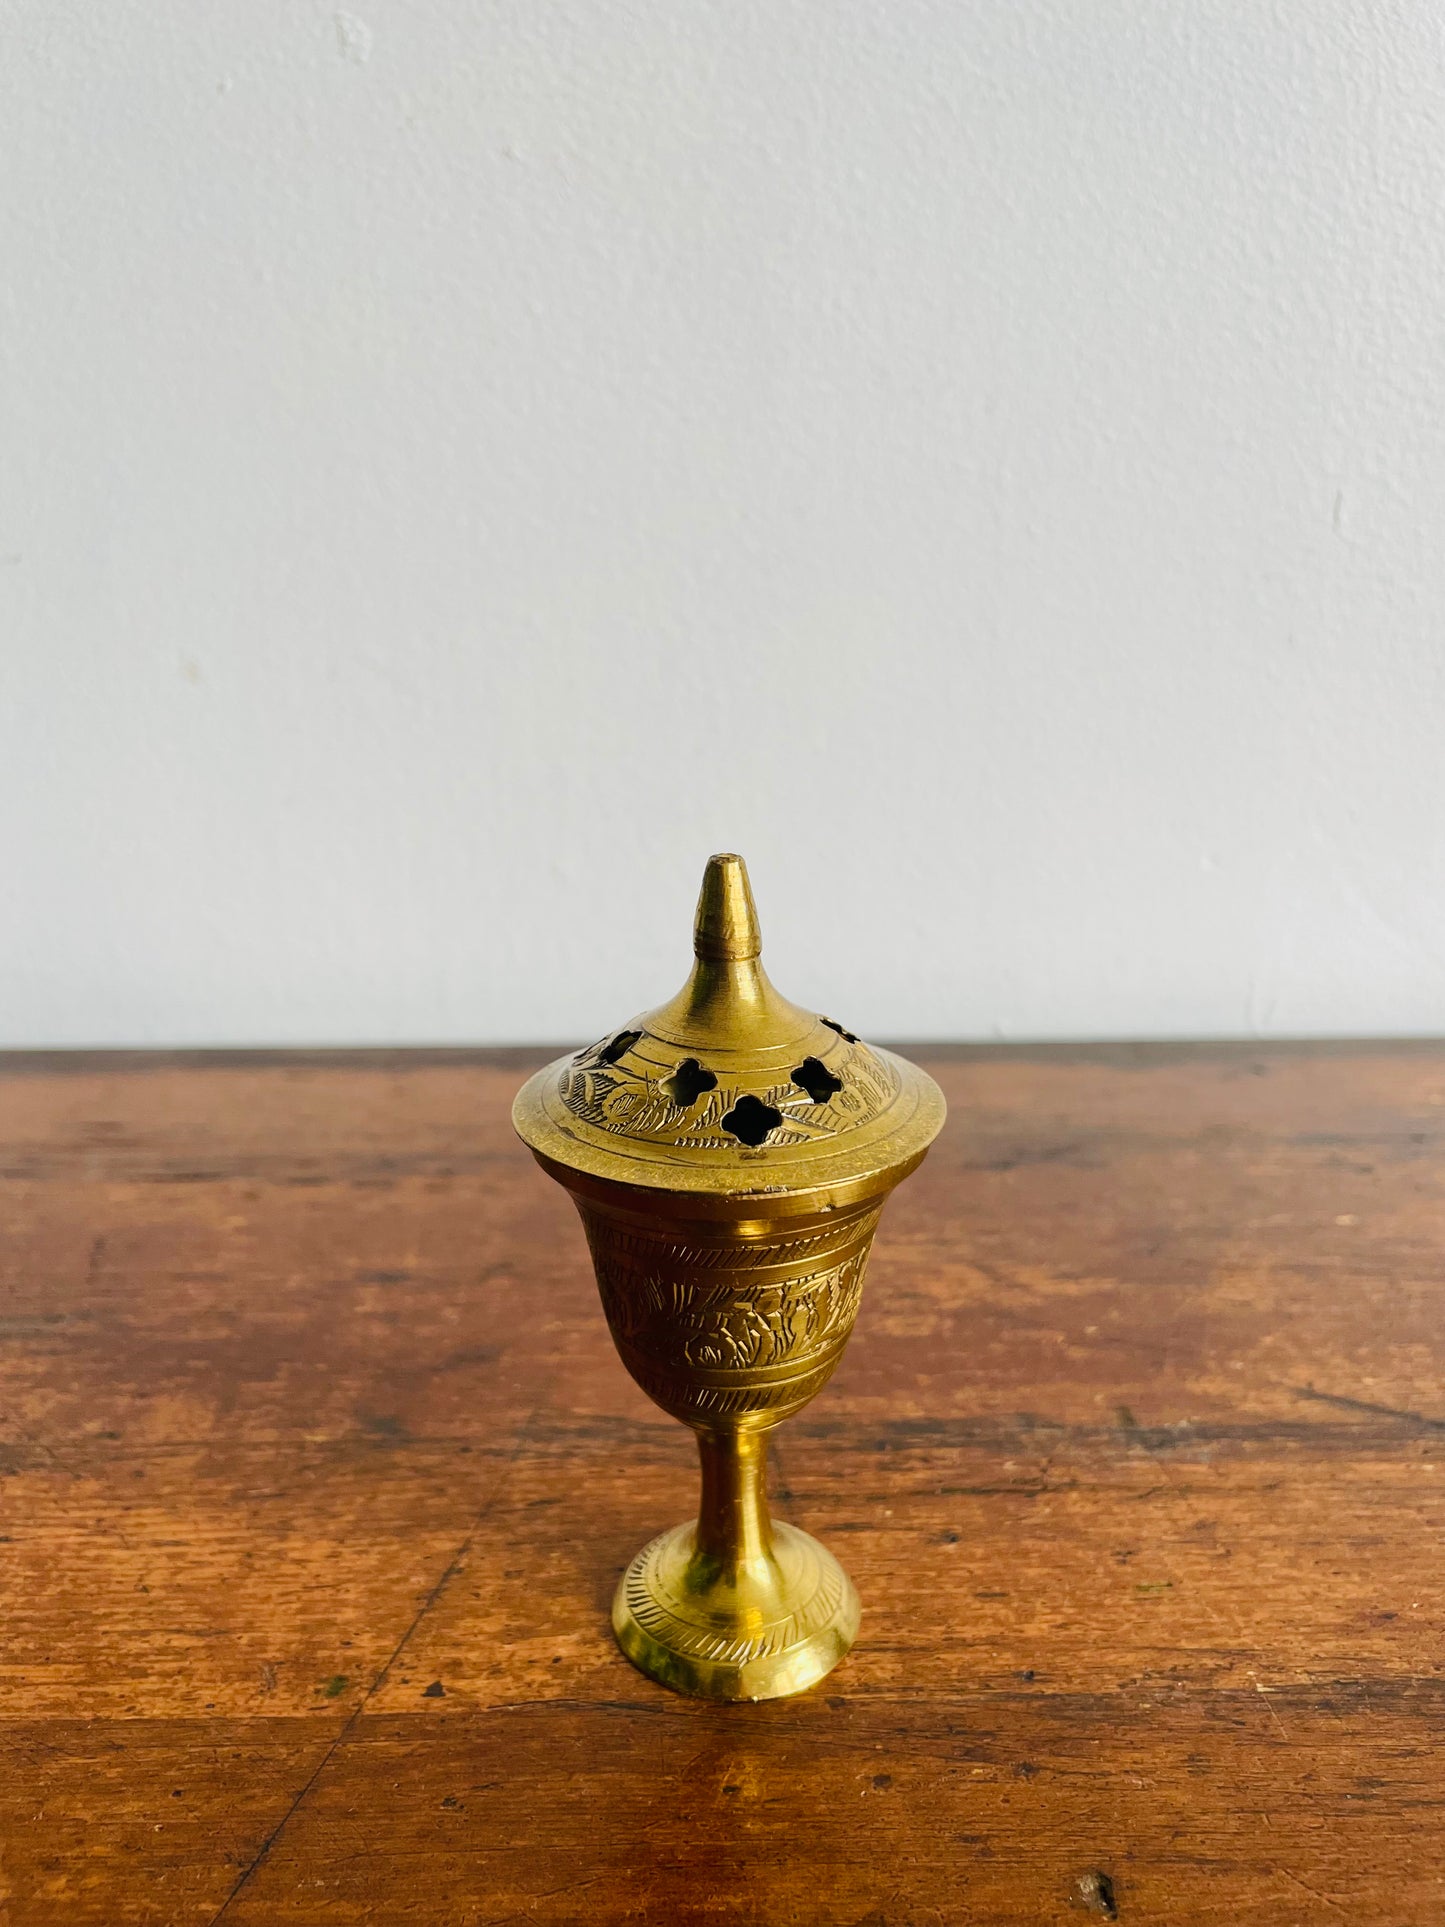 Solid Brass Goblet Shaped Incense Burner with Stem and Lid